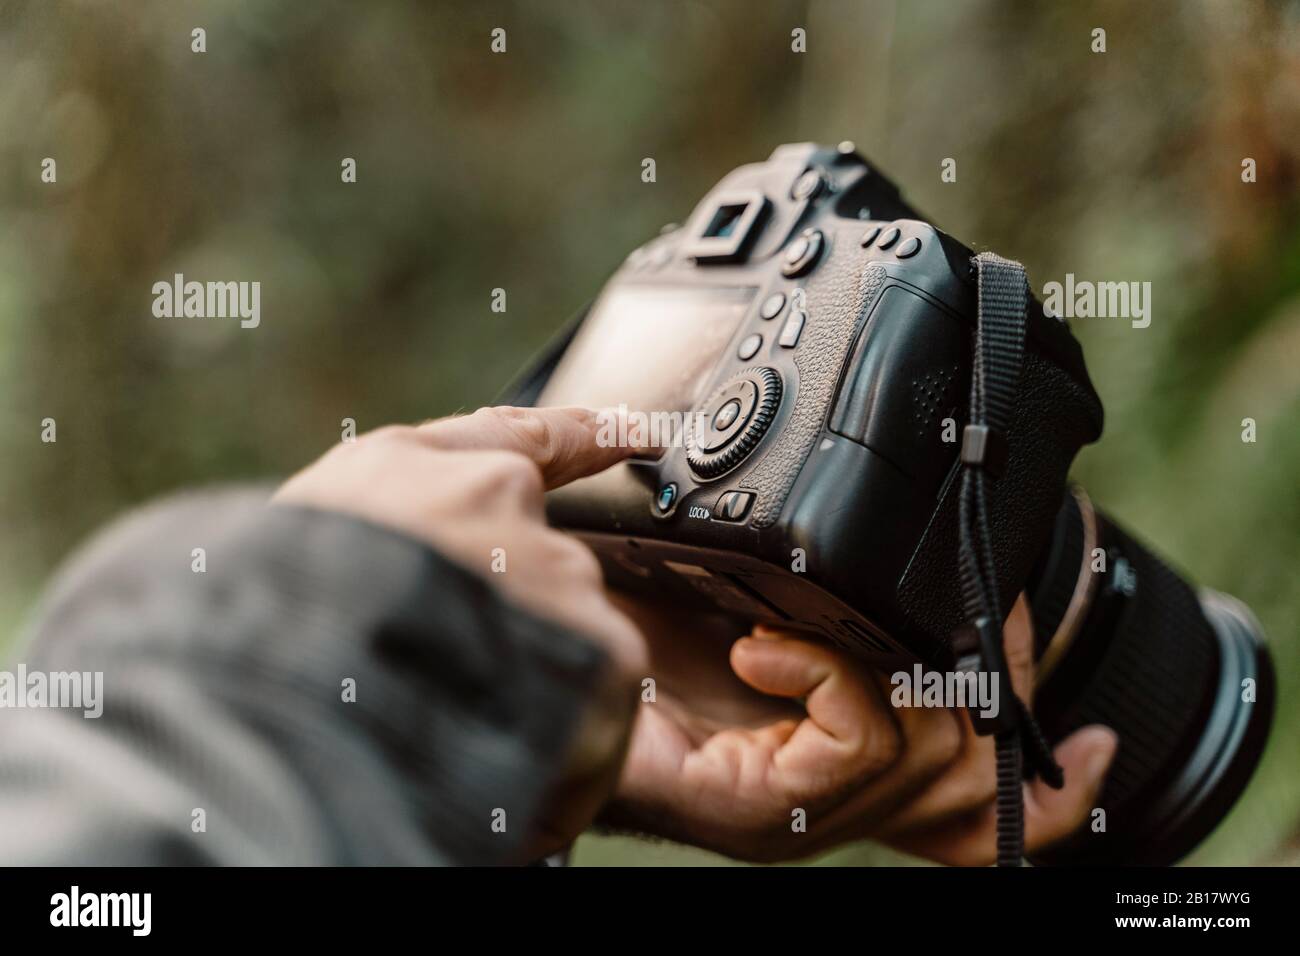 Doigt pointant sur l'écran de l'appareil photo Banque D'Images